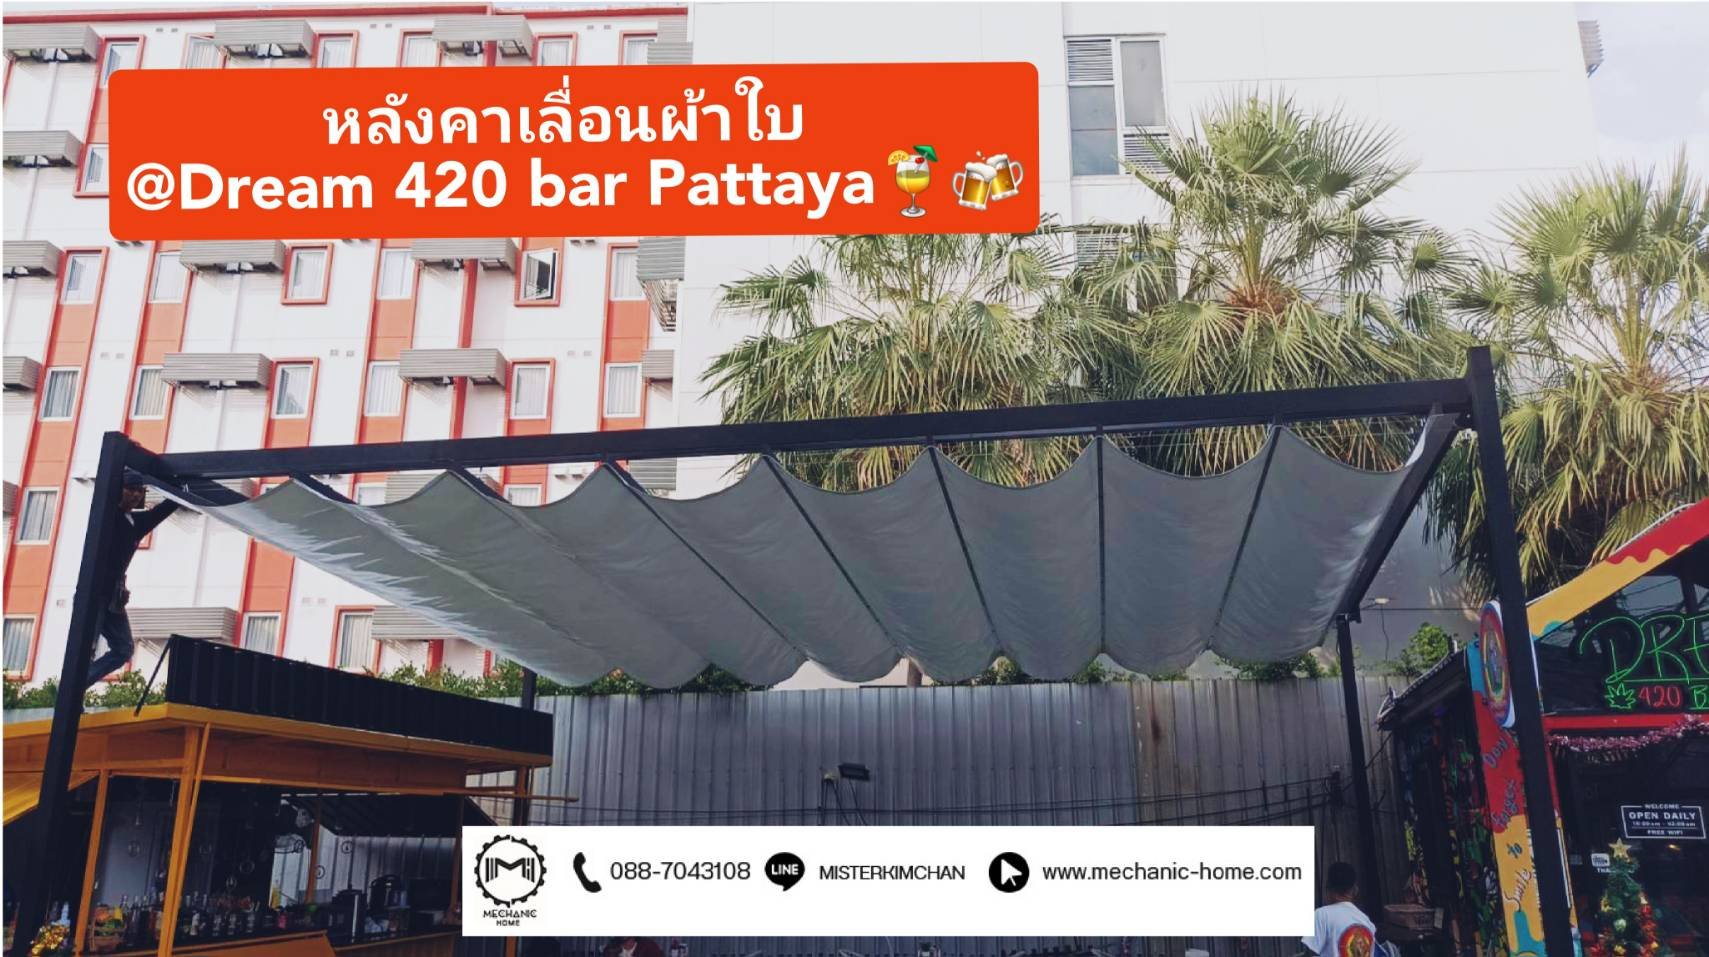 งานติดตั้งหลังคาเลื่อนผ้าใบ  By : Mechanichome @ร้าน Dream 420 bar Pattaya